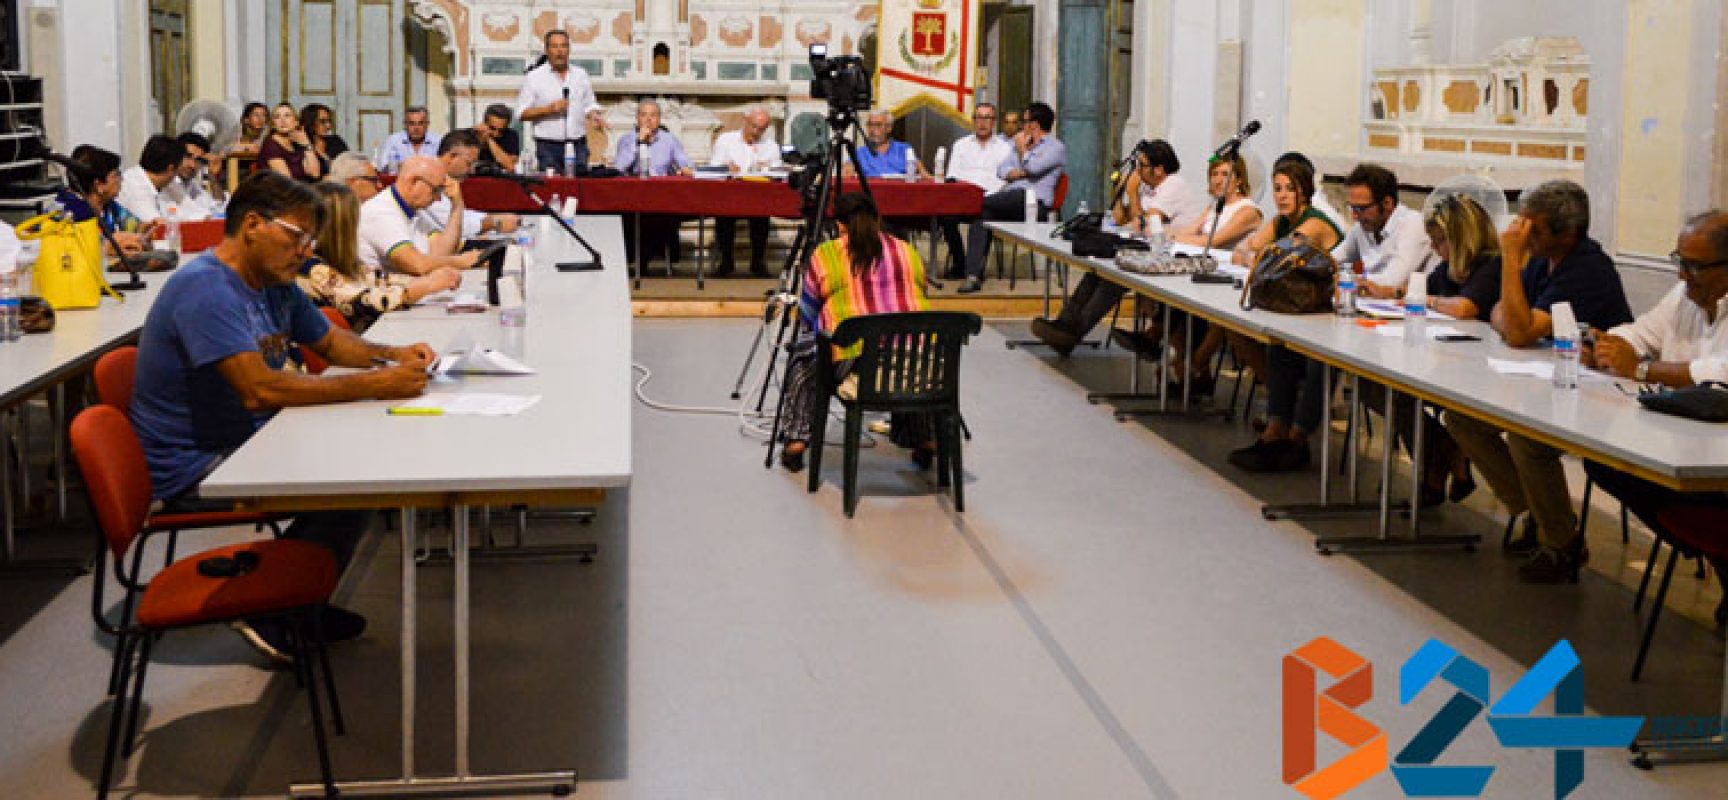 Consiglio comunale: maggioranza vota procedura di contestazione Spina, opposizione fuori dall’aula